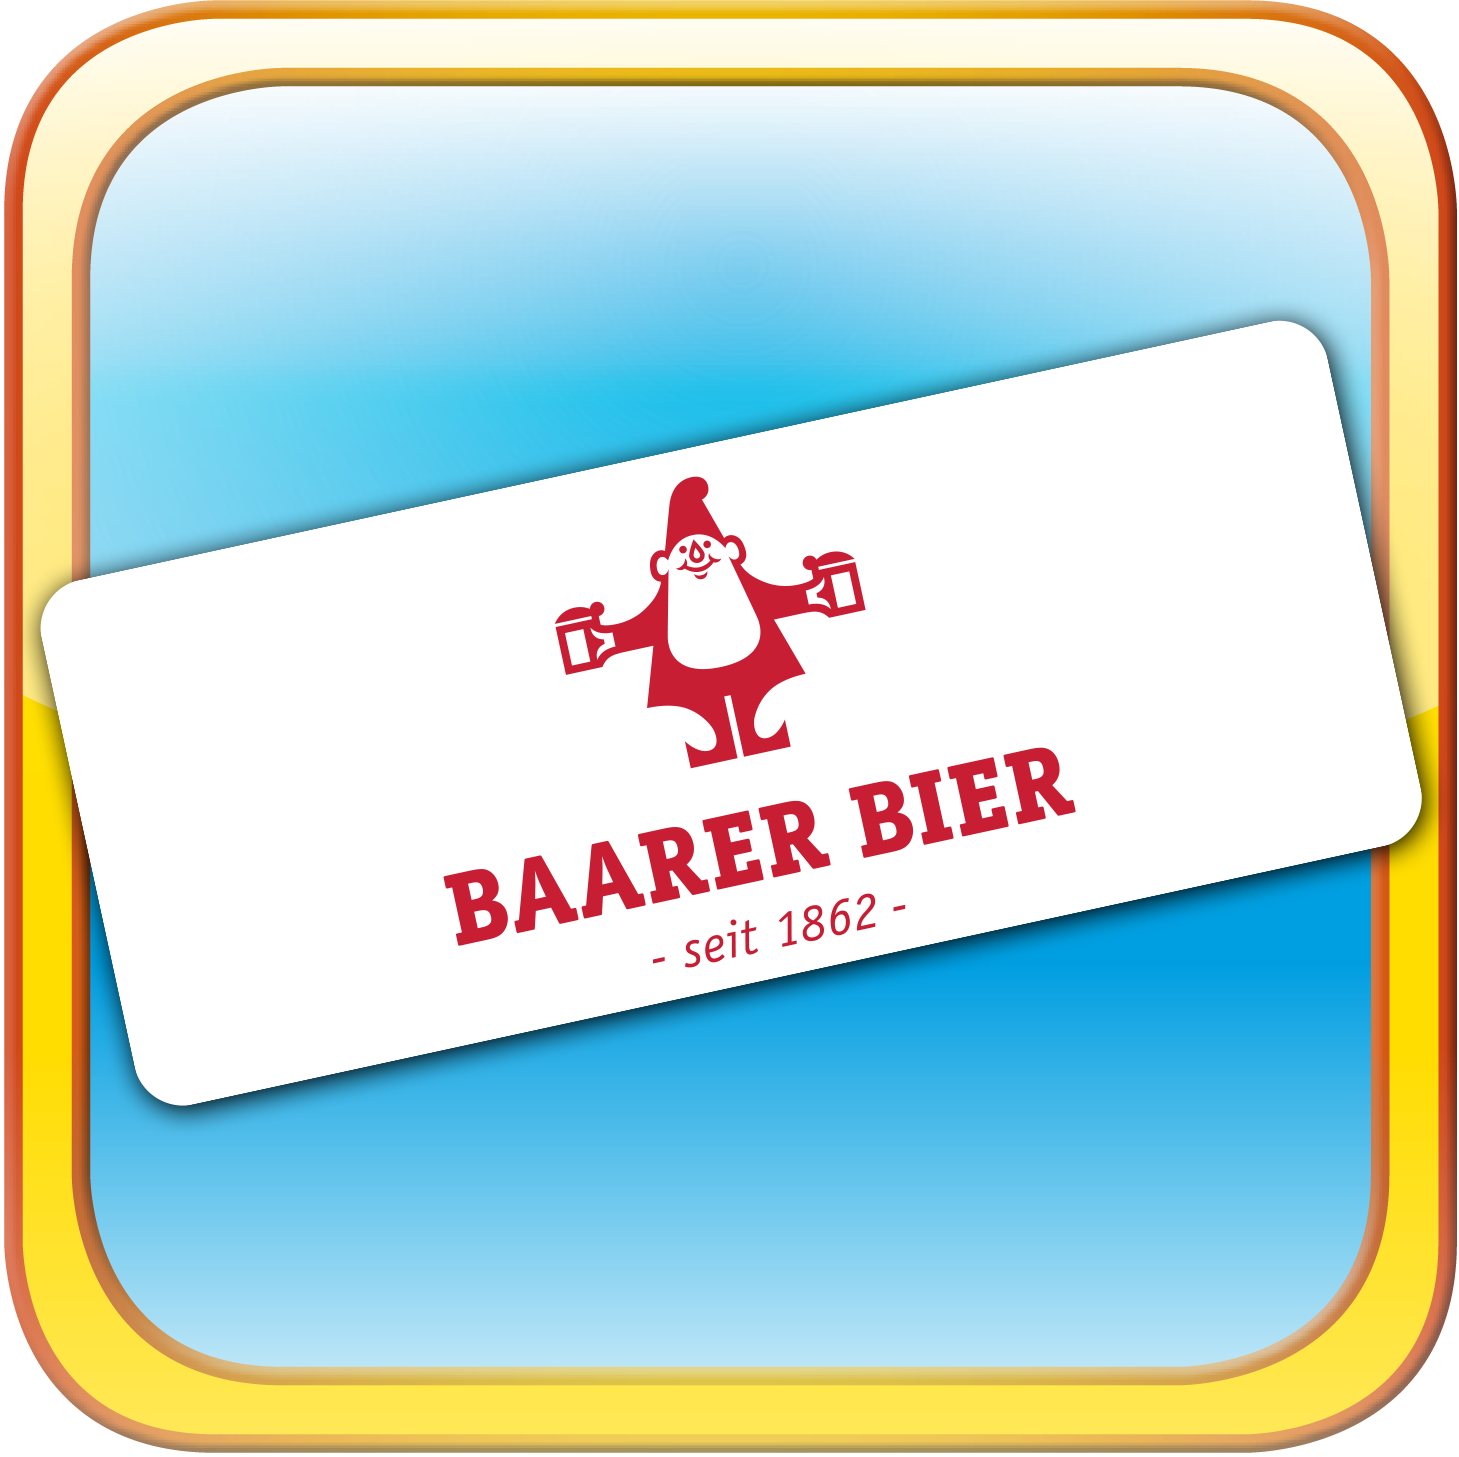 Baarer Bier Sponsor beim Beltane Park Volleyball Turnier in Cham | Baarer Bier unterstützt das Parkvolleyball-Turnier in Cham | Volleyball-Turnier im Kanton Zug